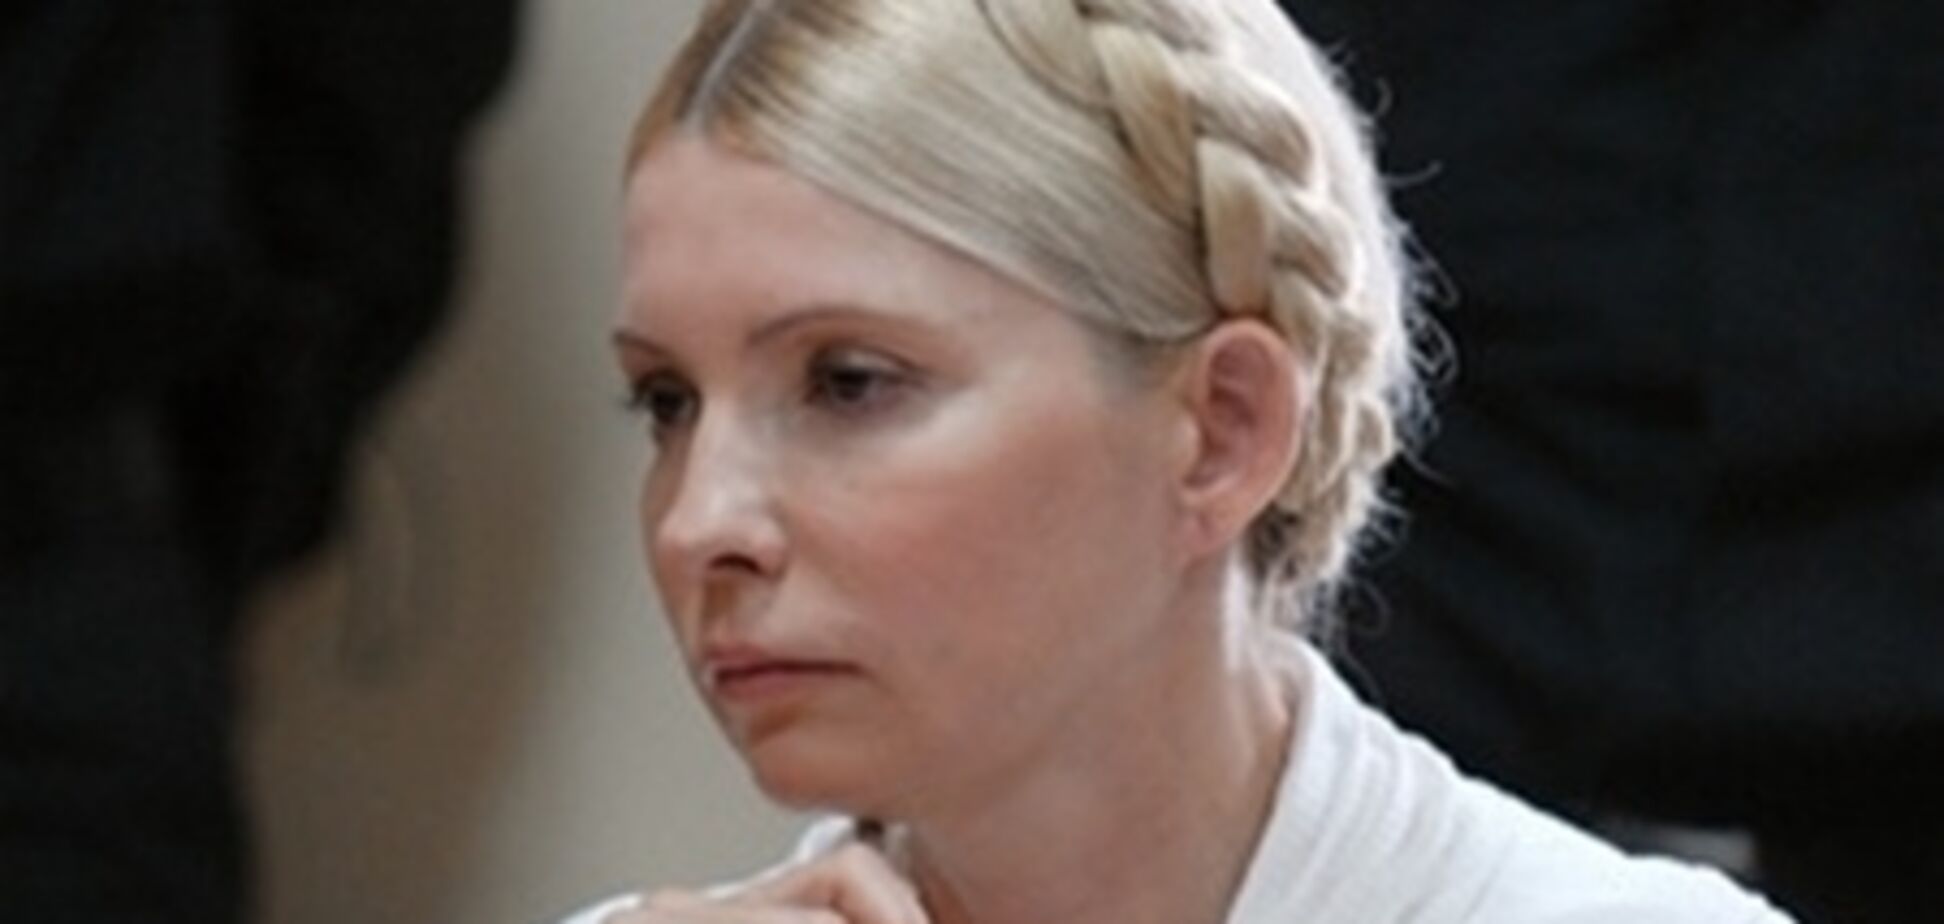 Юрист від Нафтогазу: розрахунки НАК про завдані збитки Тимошенко - фальшивка